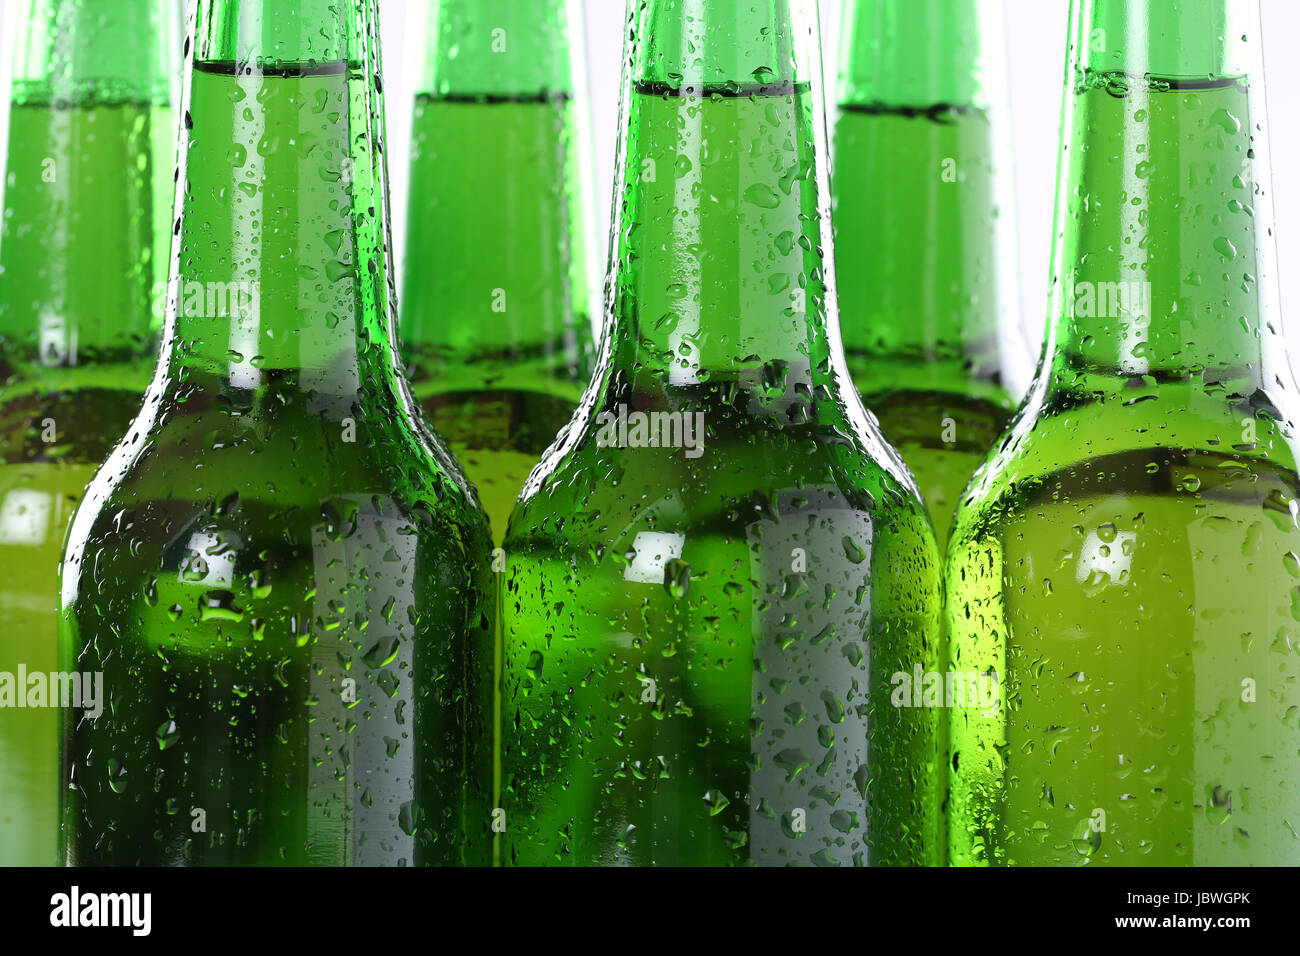 Kaltes Bier in Flaschen Getränk mit Alkohol Stock Photo